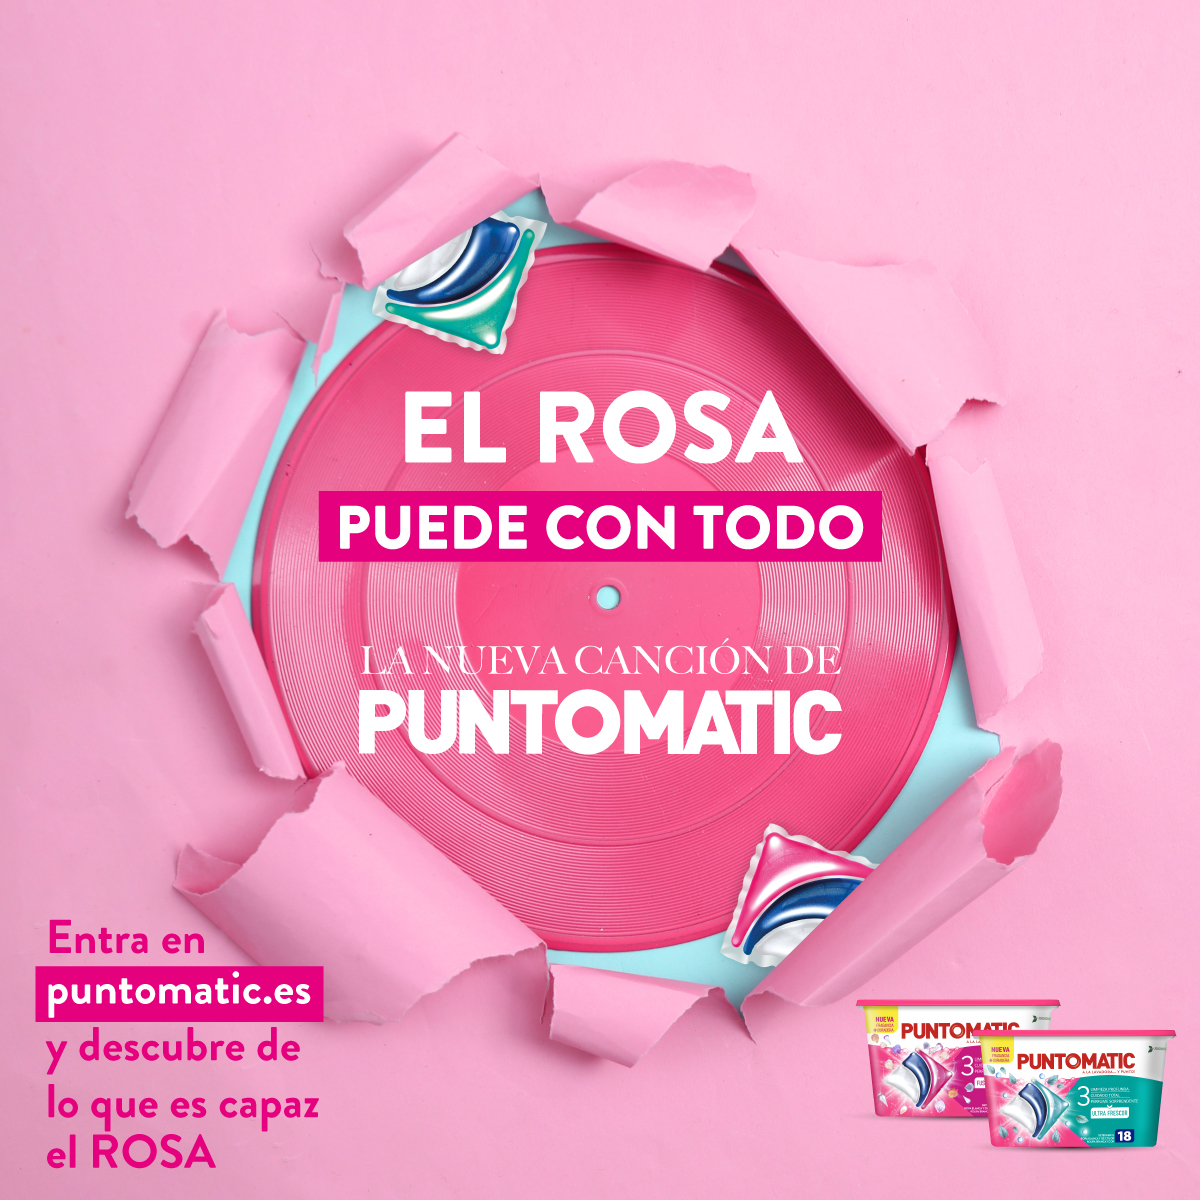 El rosa puede con todo, la nueva canción de Puntomatic